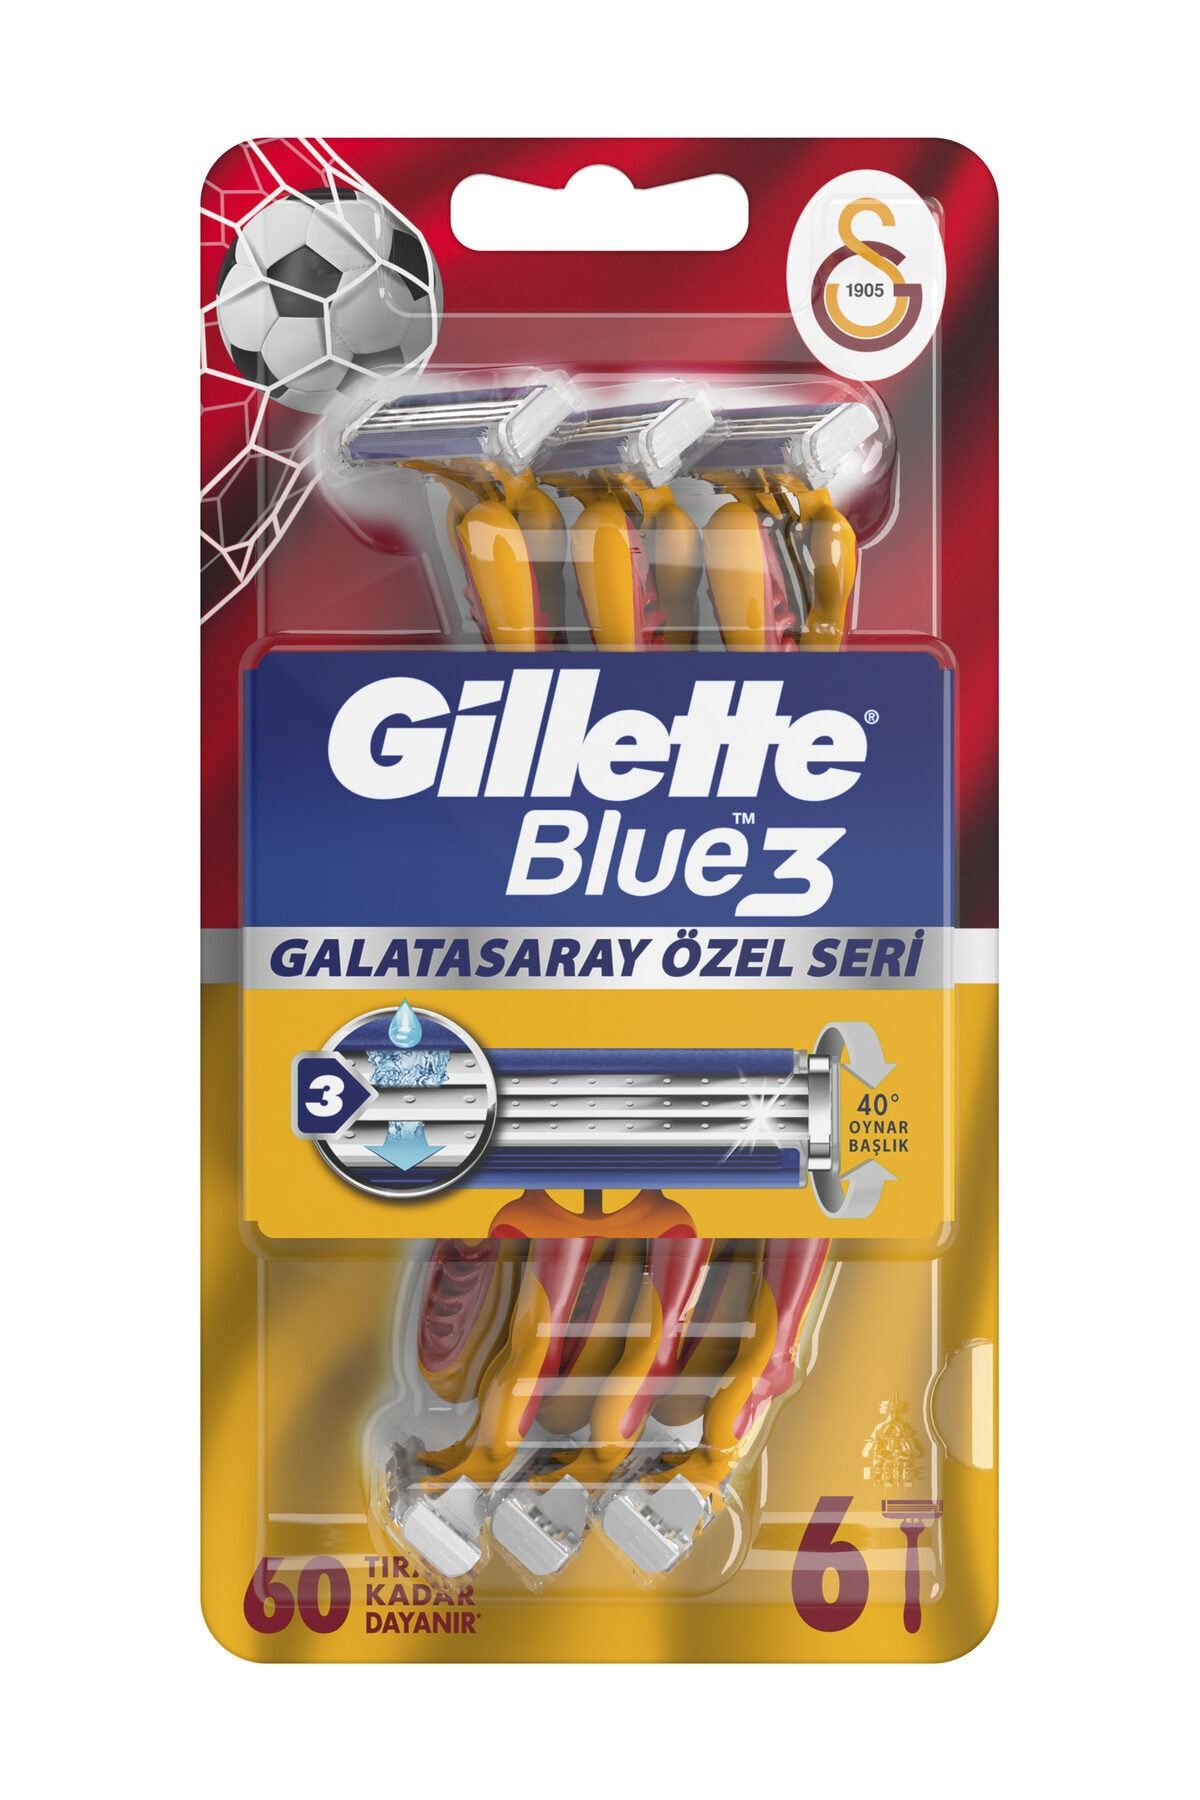 Gillette Blue 3 Tıraş Bıçağı 6'lı Galatasaray